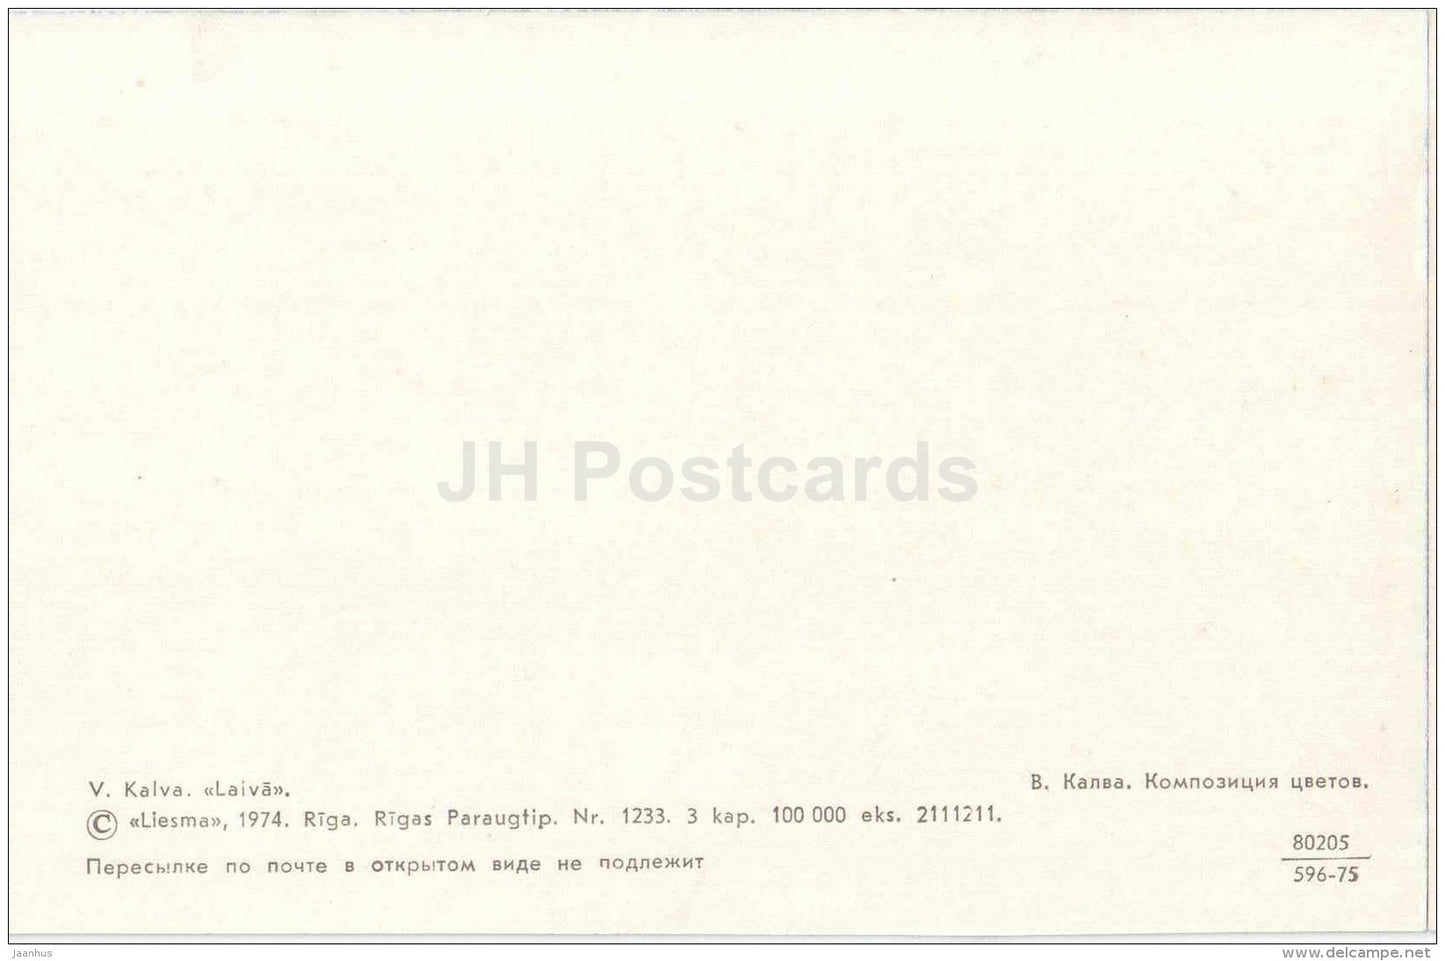 Anthurium - laceleaf - ikebana - composition - flowers - 1971 - Latvia USSR - unused - JH Postcards